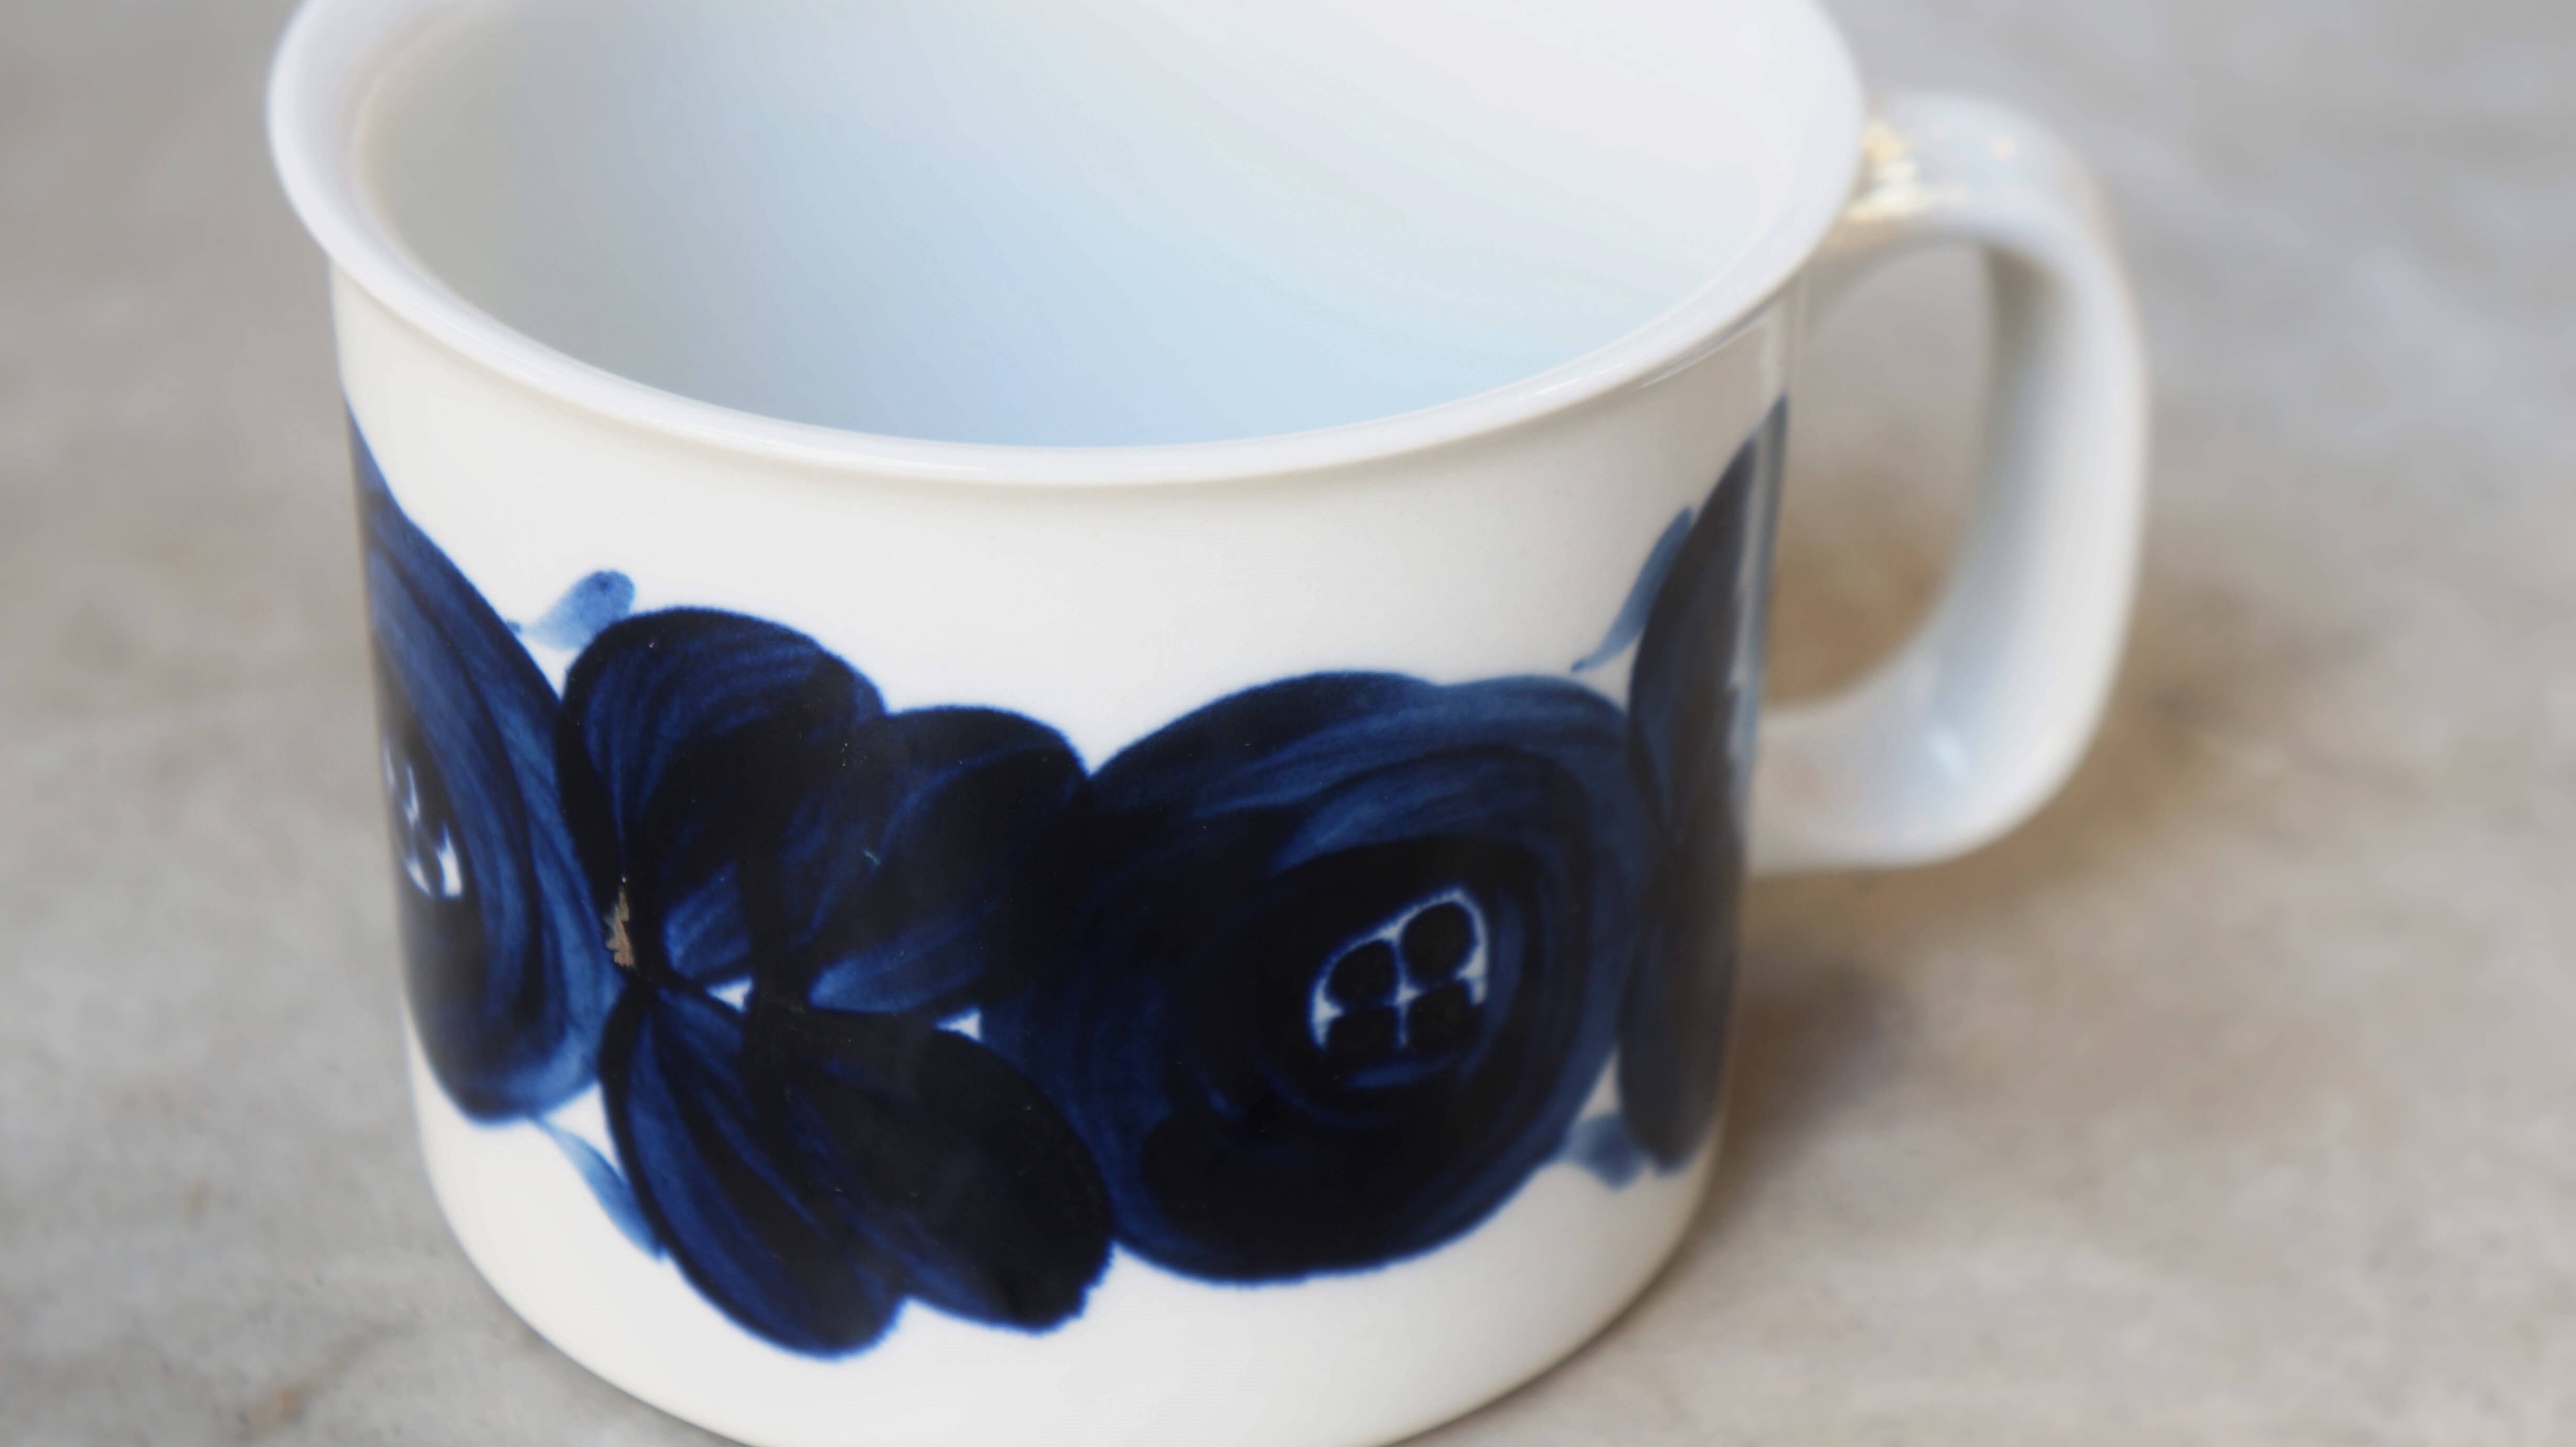 アラビアを代表するデザイナーのひとり、ウラ・プロコッペが手掛けた"アネモネ"シリーズ。 ハンドペイントで大胆に描かれたアネモネの花が目を引く大人気シリーズです。 全て職人さんの手で絵付けされているので、ひとつひとつ色の濃さや花の形などが異なります。 深い藍色が和食器とも相性が良いというのも人気の理由のひとつです。 こちらはちょっと珍しい大容量サイズのマグカップ。 お仕事やお勉強、読書のお供にはたっぷりと注げるのがうれしいですね。 コーヒーや紅茶だけでなく、これであたたかいスープを飲むのもおすすめです。 "アネモネ"は1964～1974年に生産され、その後1980年代に復刻されました。 こちらのマグカップのように、裏の手書きのサインが入っているものは 1964～1974年に生産されたオリジナルです。 窯の中にボウルが入っている"オーブン対応マーク"もかわいいです。 市場ではなかなか出回らない大きなサイズのマグカップ。 お探しの方はぜひいかがでしょうか♪ ～【東京都杉並区阿佐ヶ谷北アンティークショップ 古一/ZACK高円寺店】　古一/ふるいちでは出張無料買取も行っております。杉並区周辺はもちろん、世田谷区・目黒区・武蔵野市・新宿区等の東京近郊のお見積もりも！ビンテージ家具・インテリア雑貨・ランプ・USED品・ リサイクルなら古一/フルイチへ～